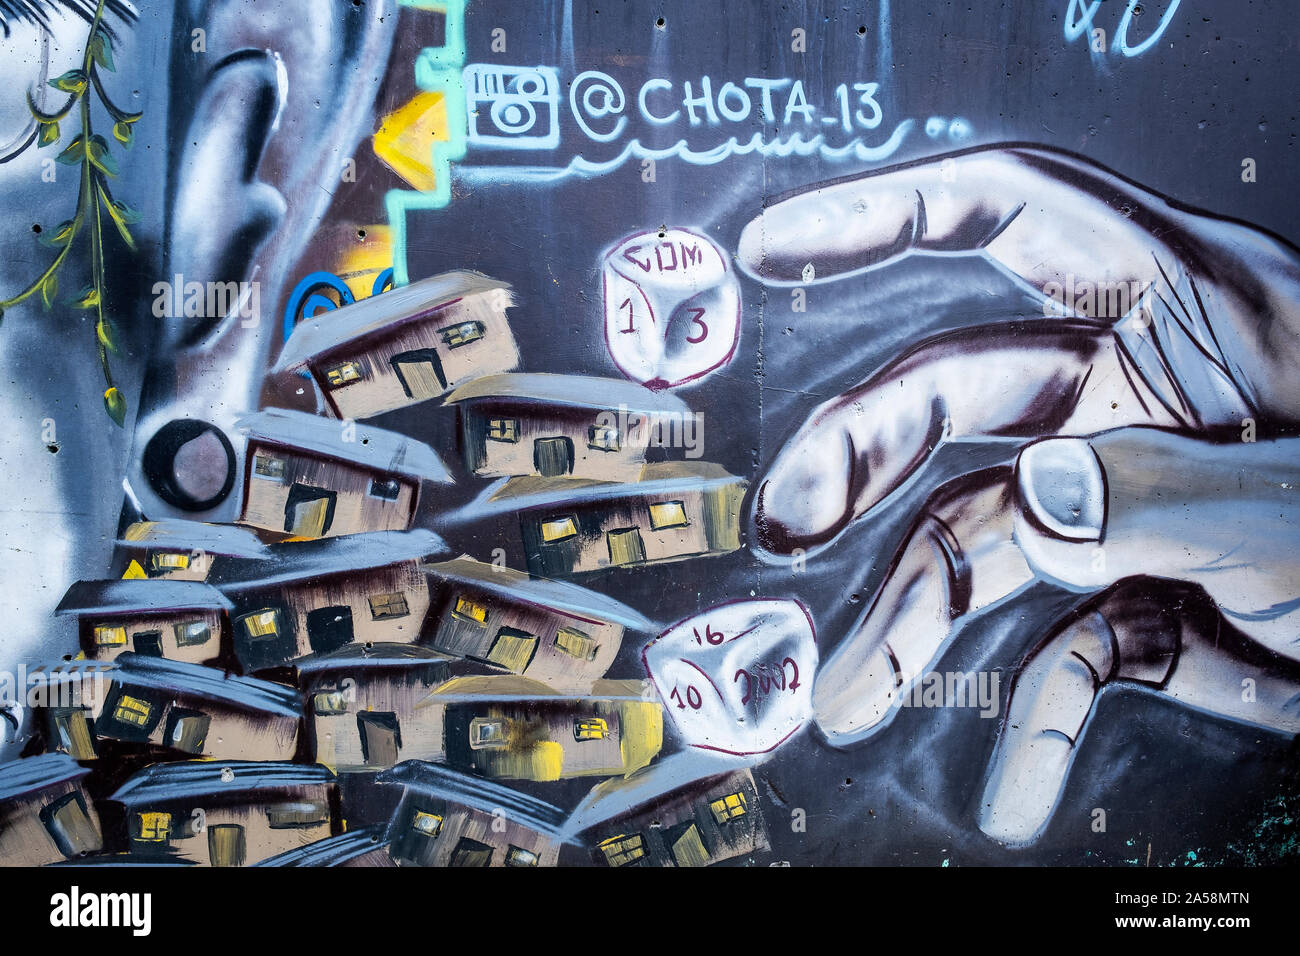 "Orion" par Chota, street art, peinture murale, graffiti, Comuna 13, Medellín, Colombie Banque D'Images